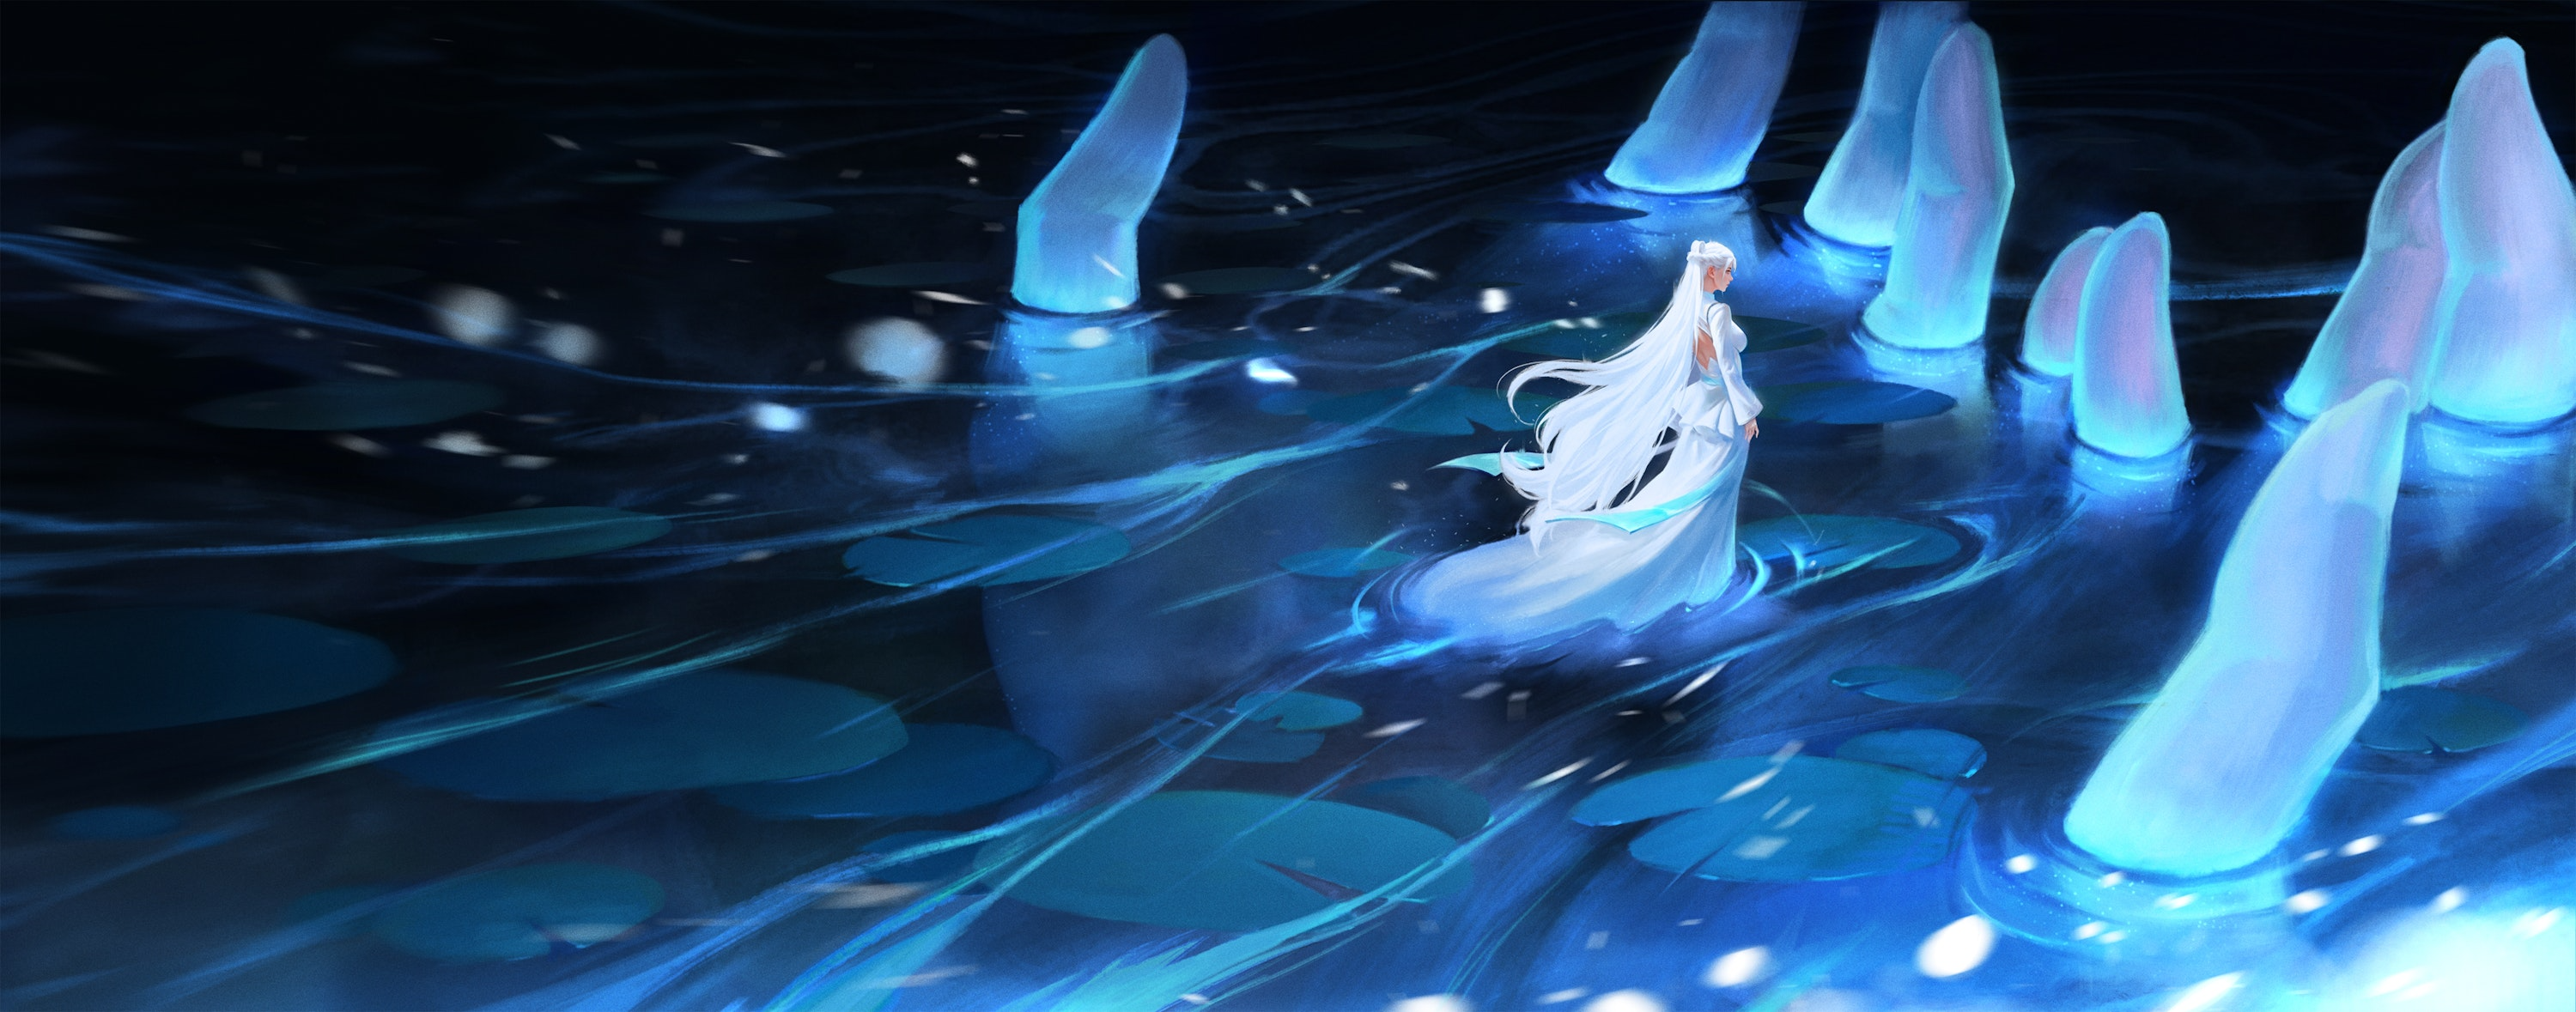 Digital Art Artwork Illustration Anime Anime Girls Hands Water Lake Long Hair White Hair White Dress 3000x1179